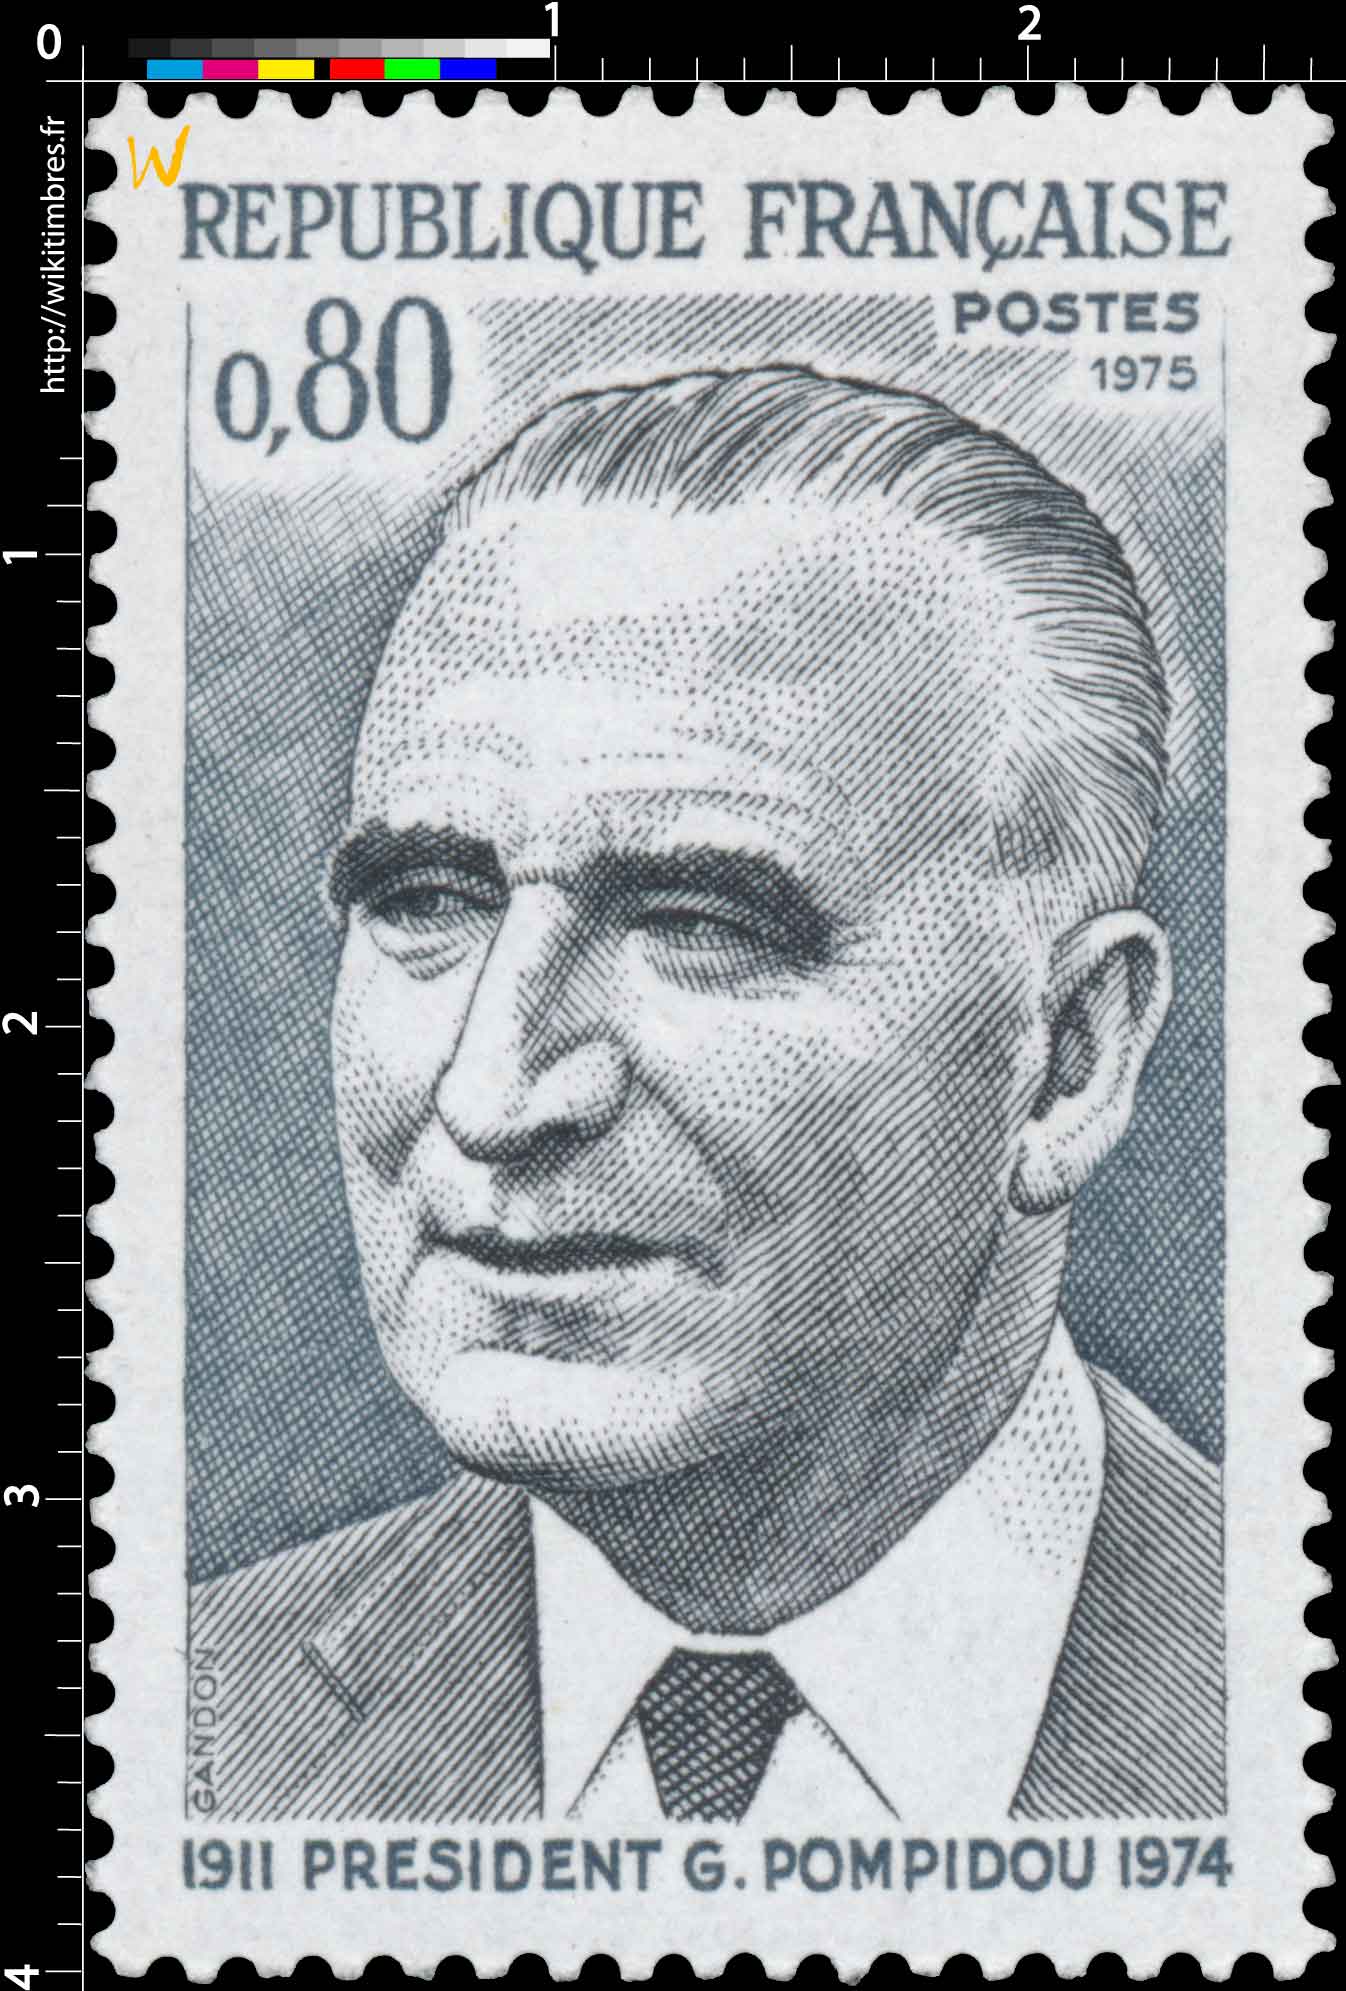 1975 PRÉSIDENT G. POMPIDOU 1911-1974